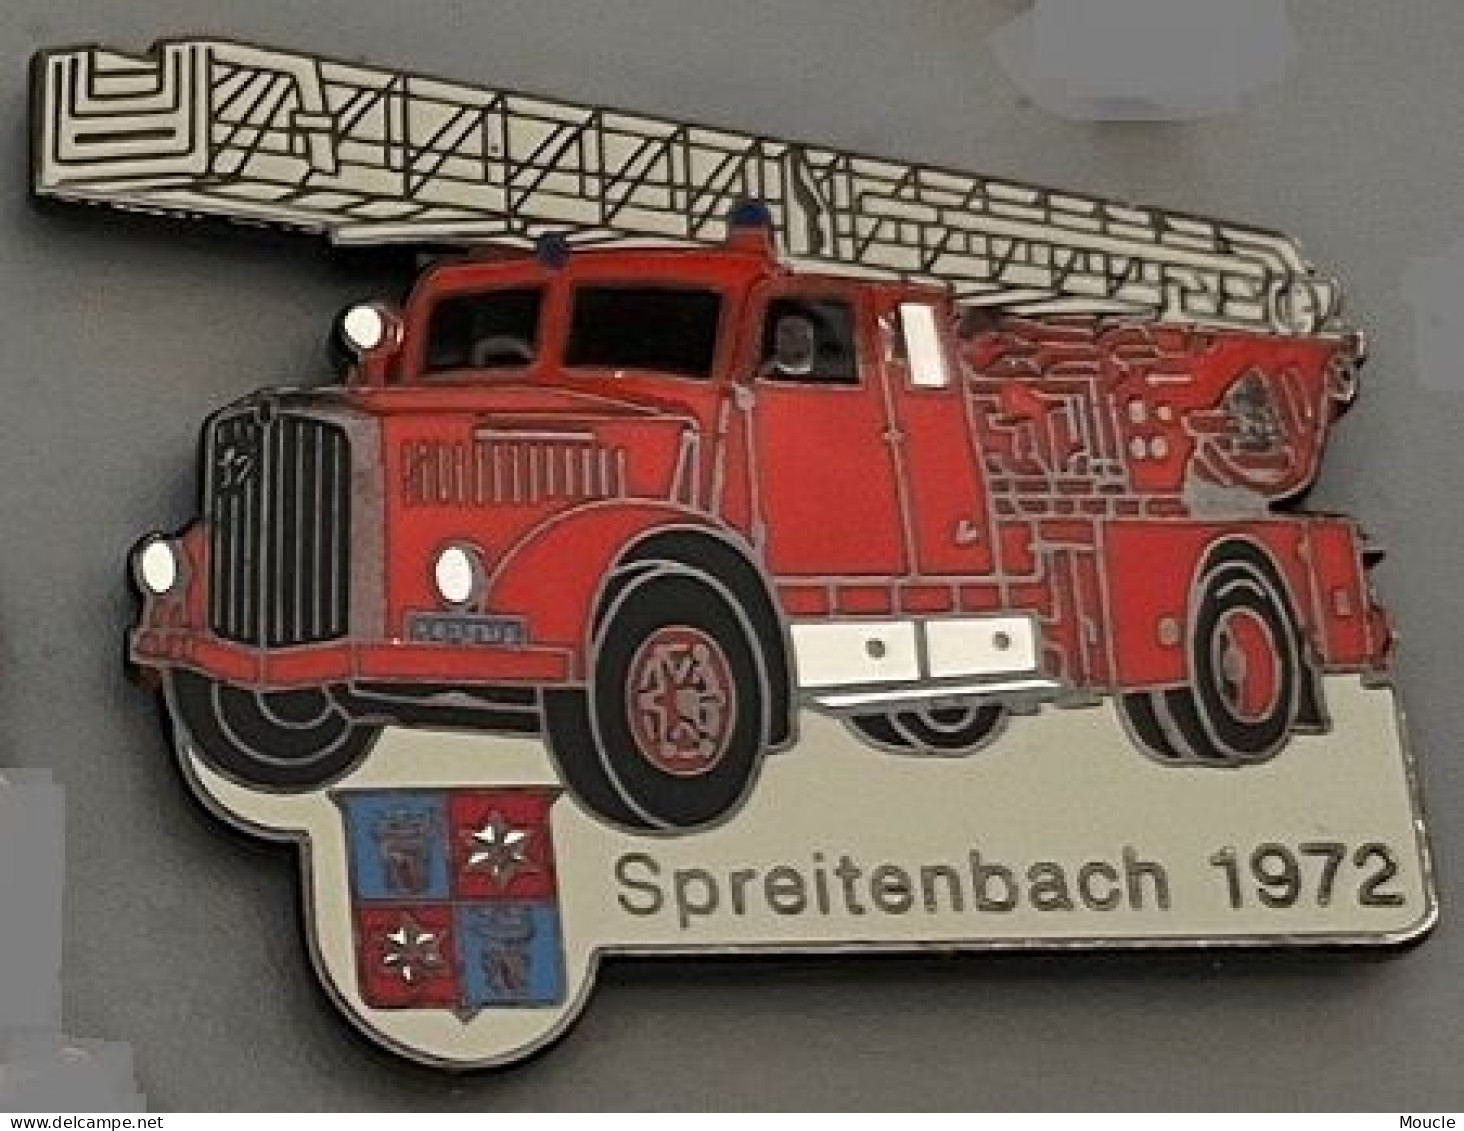 CAMION SAPEURS POMPIERS - SPREITENBACH 1972 - SUISSE - SCHWEIZ - TRUCK - FEUERWEHRMANN - FIREFIGHTER - EGF - N°372 -(32) - Pompiers